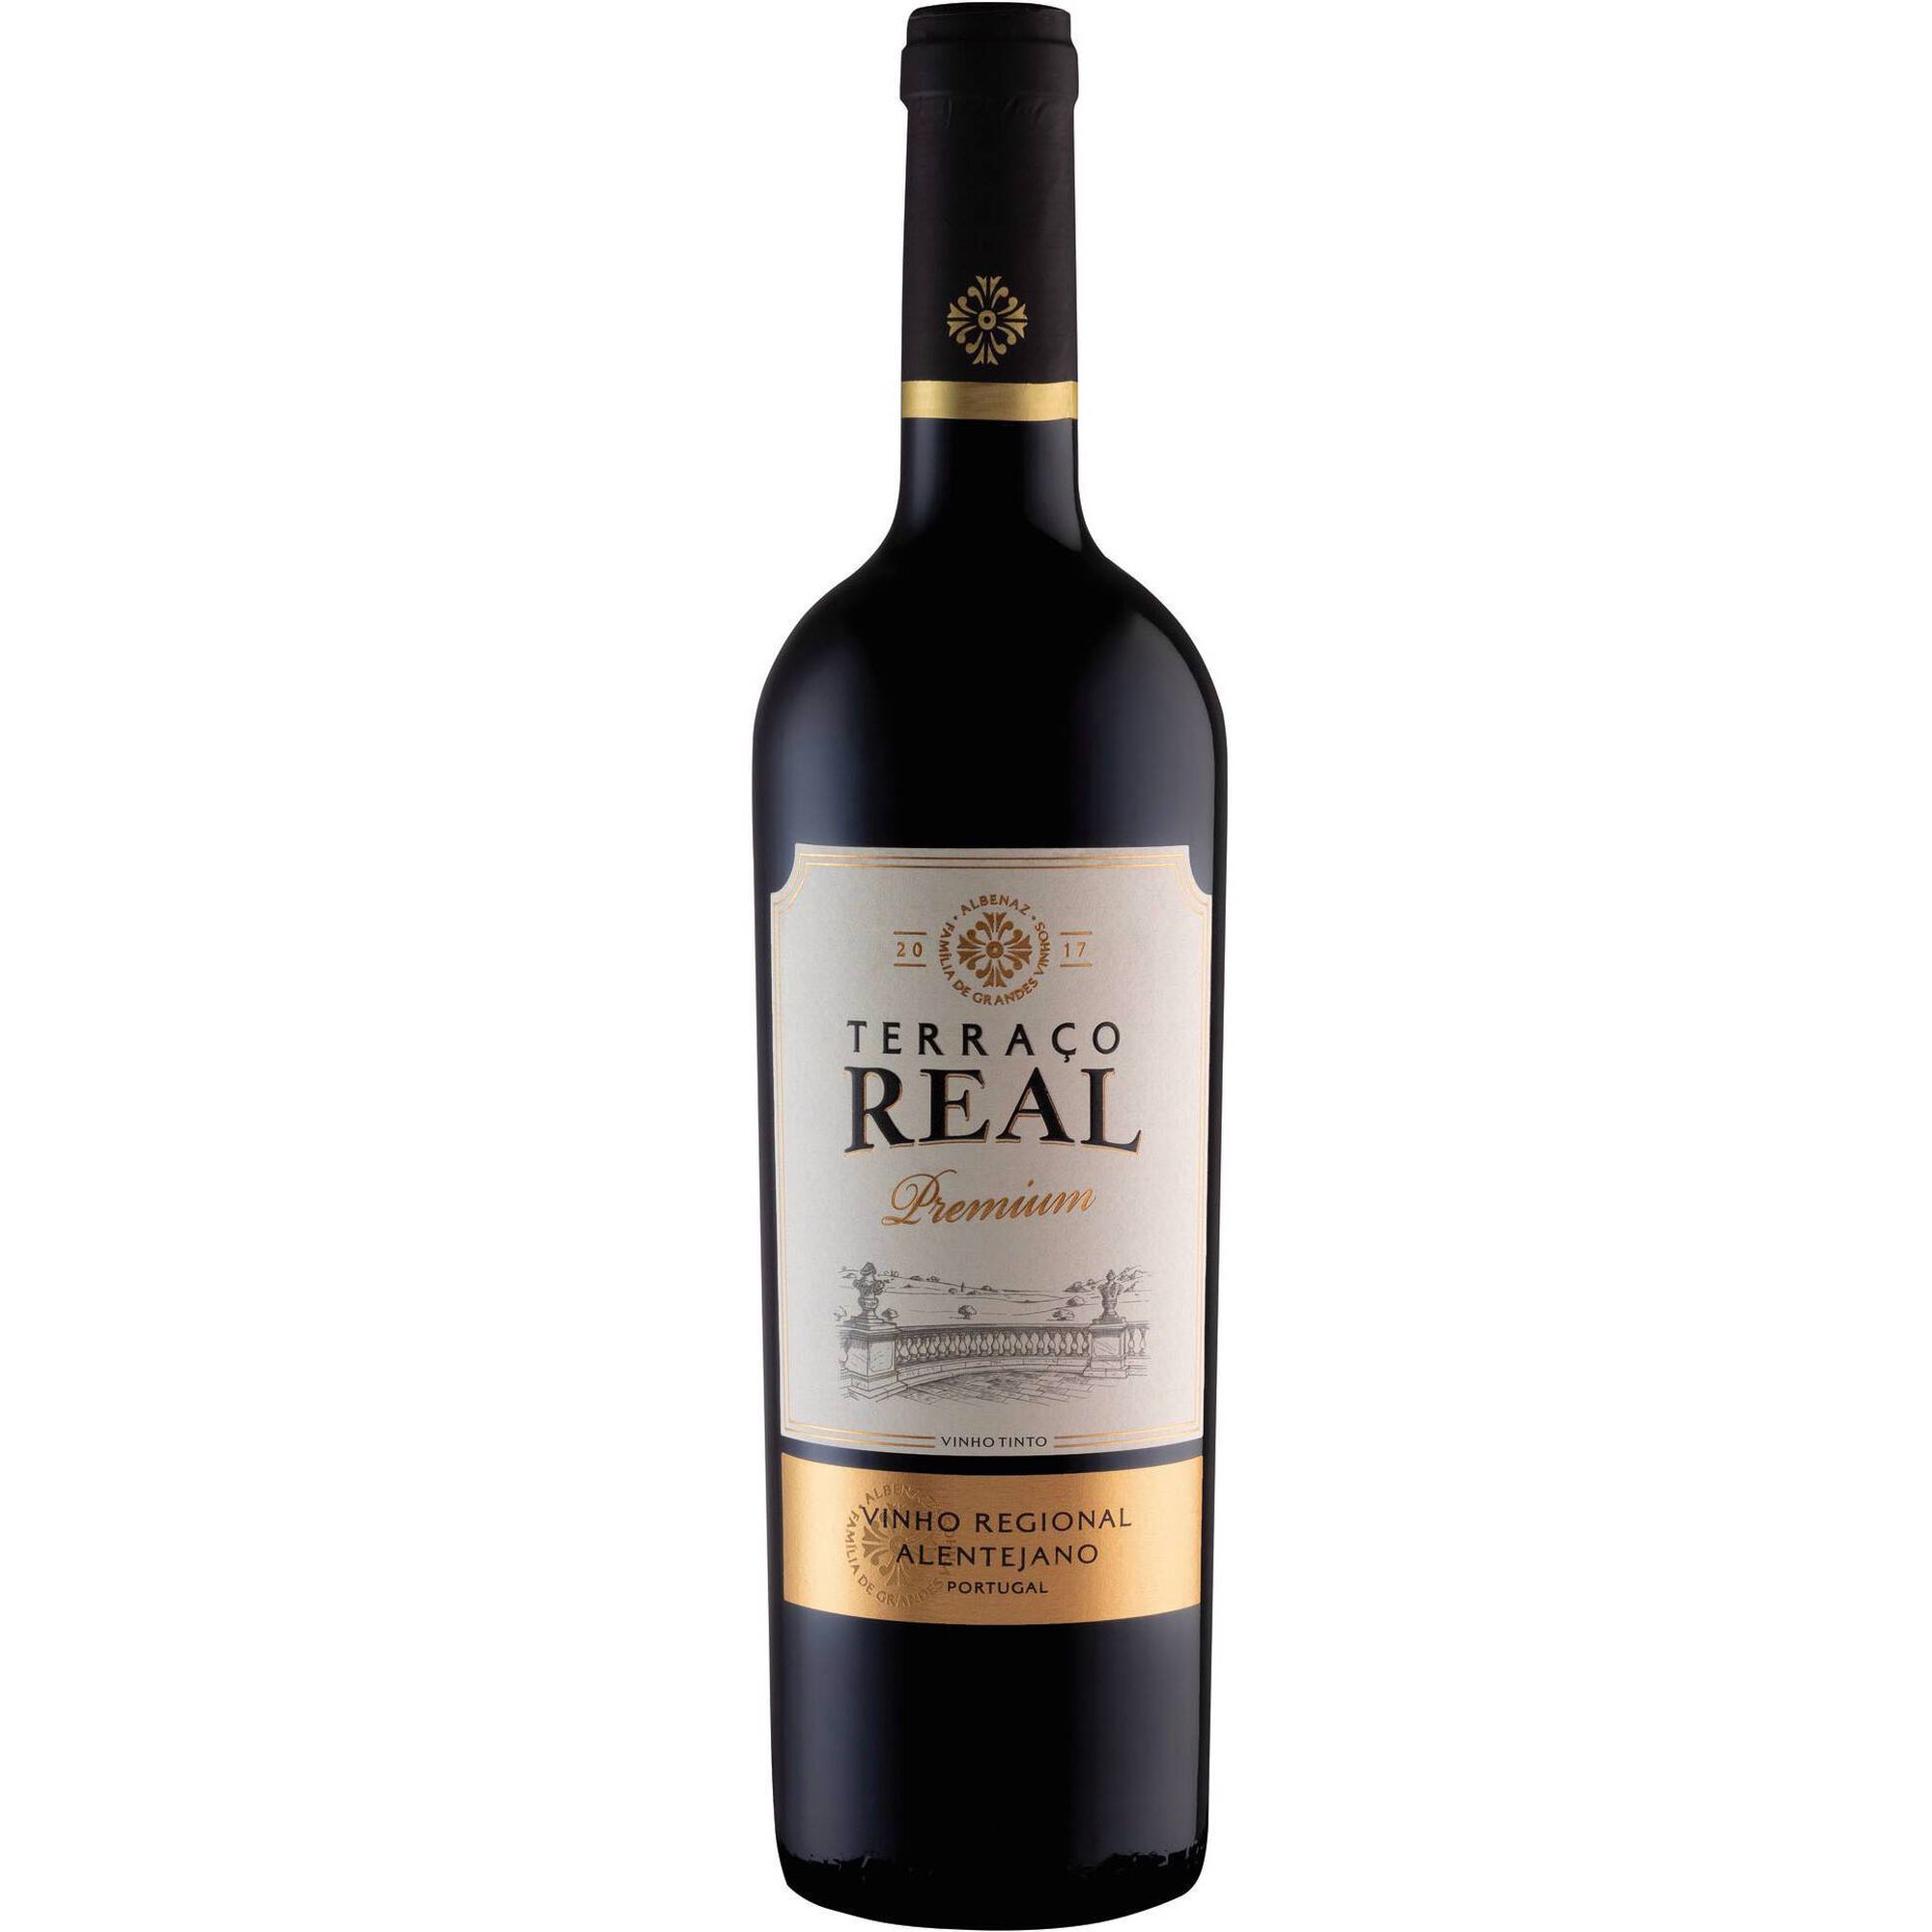 Albenaz Terraço Real Premium Regional Alentejano Vinho Tinto